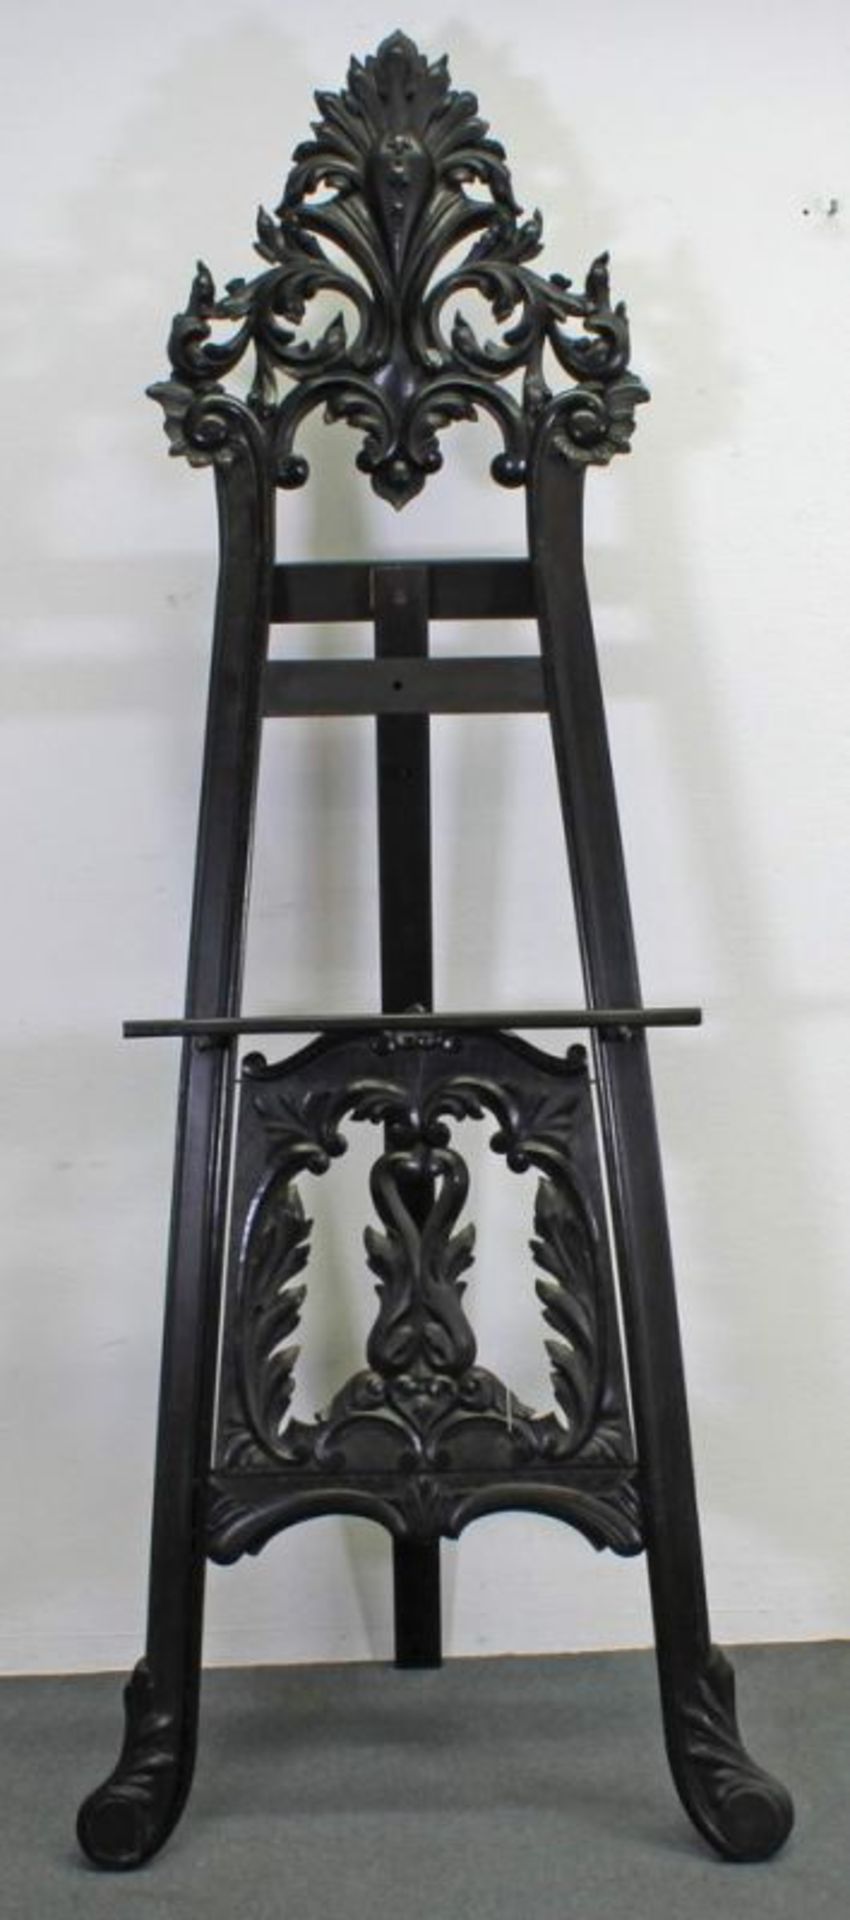 Staffelei, um 1900, Holz, dunkel patiniert, reich geschnitzt, 218 cm hoch, 85 cm breit, kleine